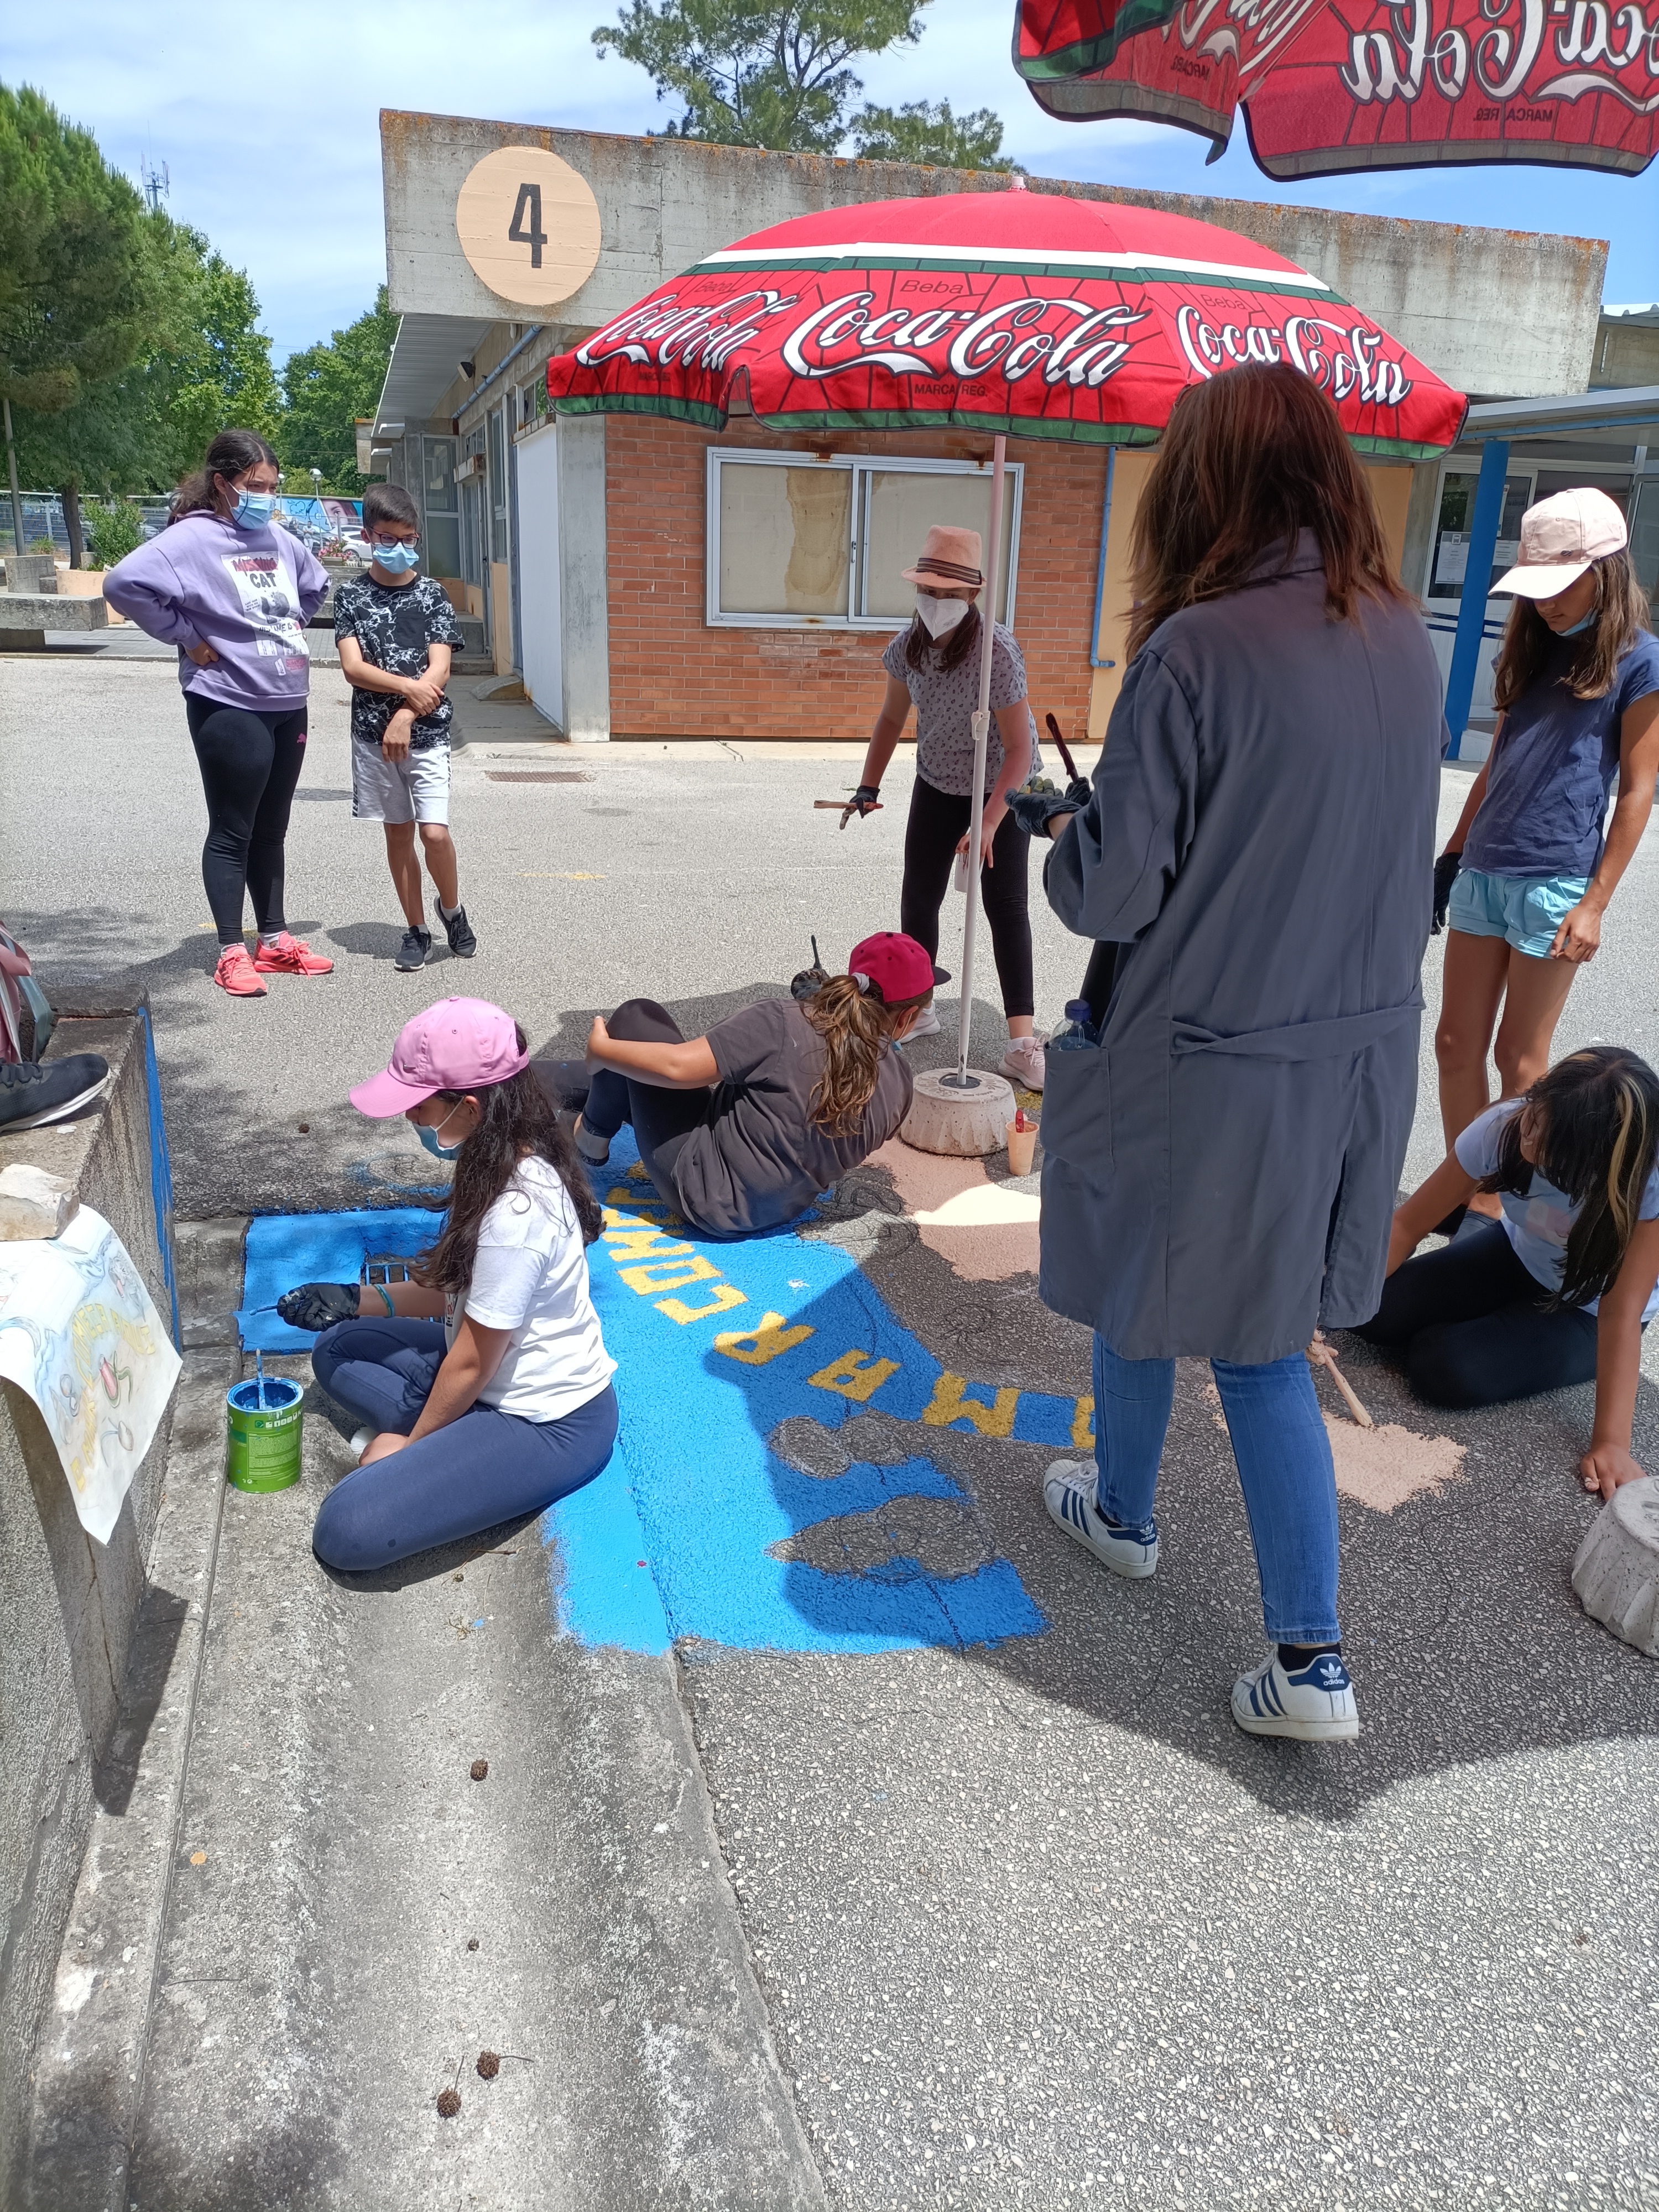 Continuação do trabalho. Os alunos pintam o chão de azul, simbolizando o Mar, sob a orientação da professora de Oficina de Artes,